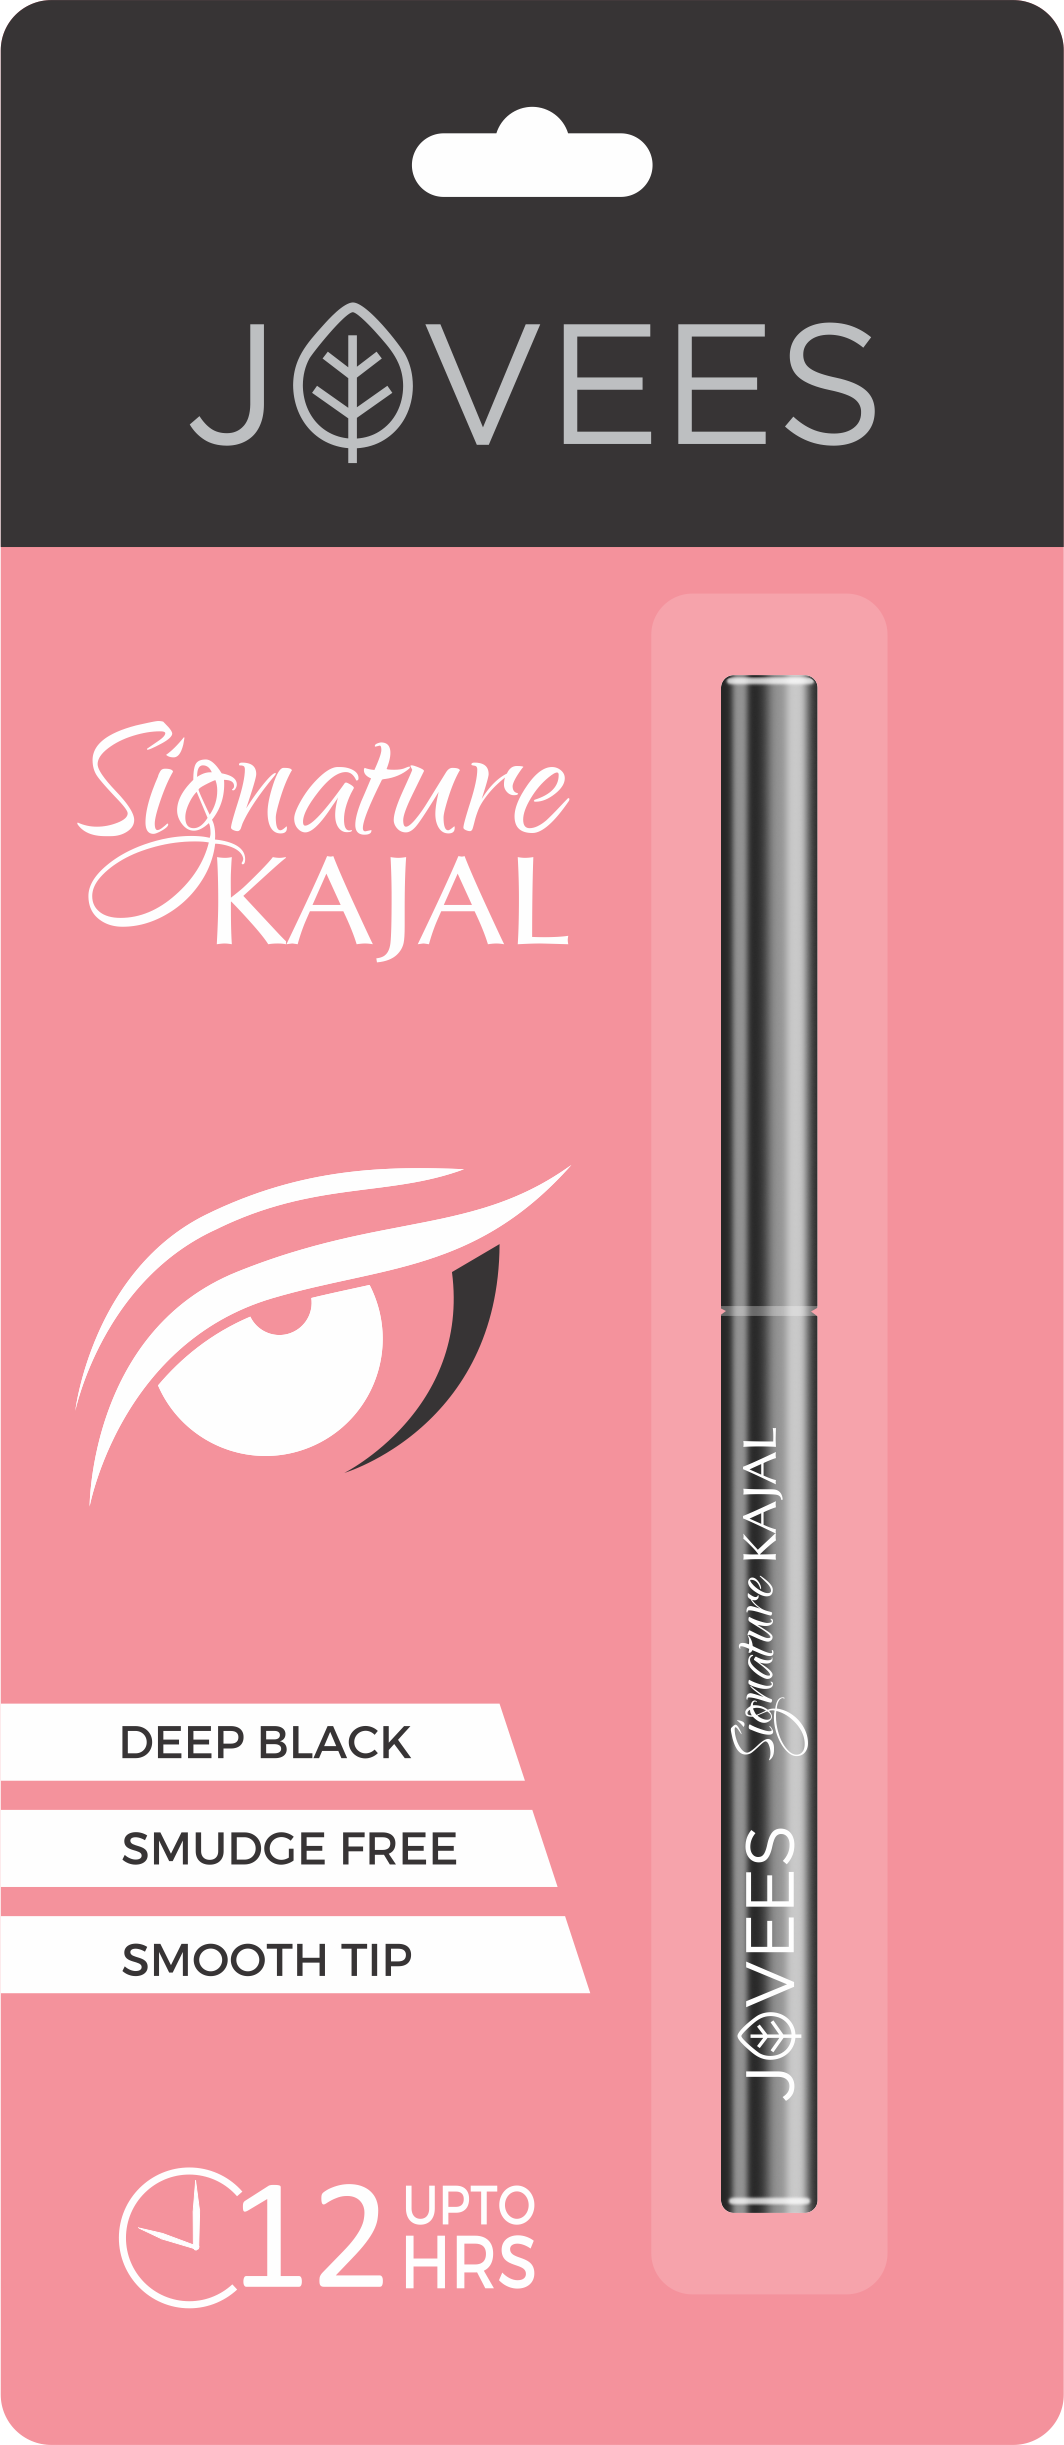 Jovees Signature Kajal Deep Black